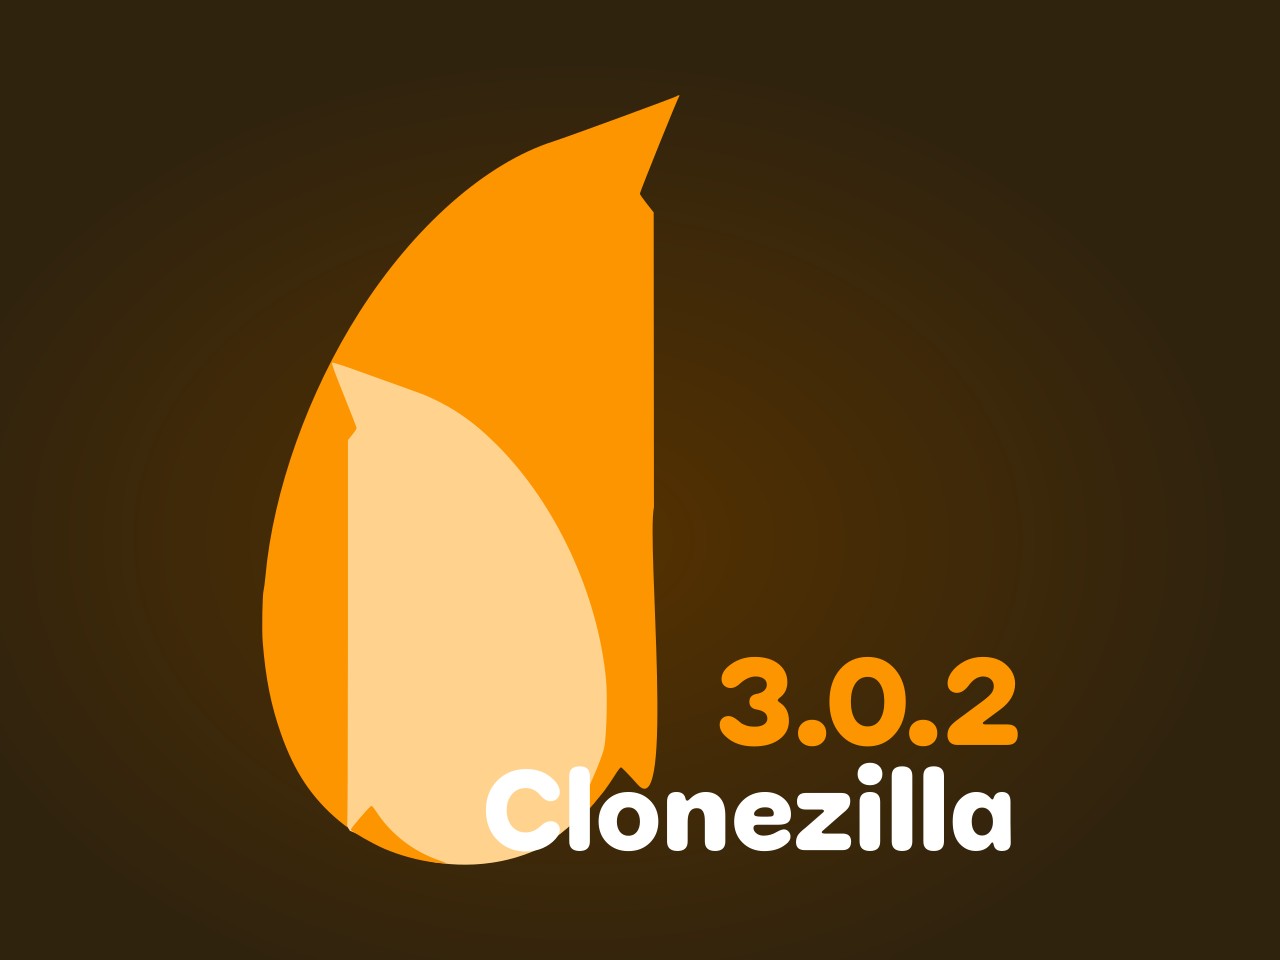 Clonezilla Live 3.1.1-27 for ipod instal